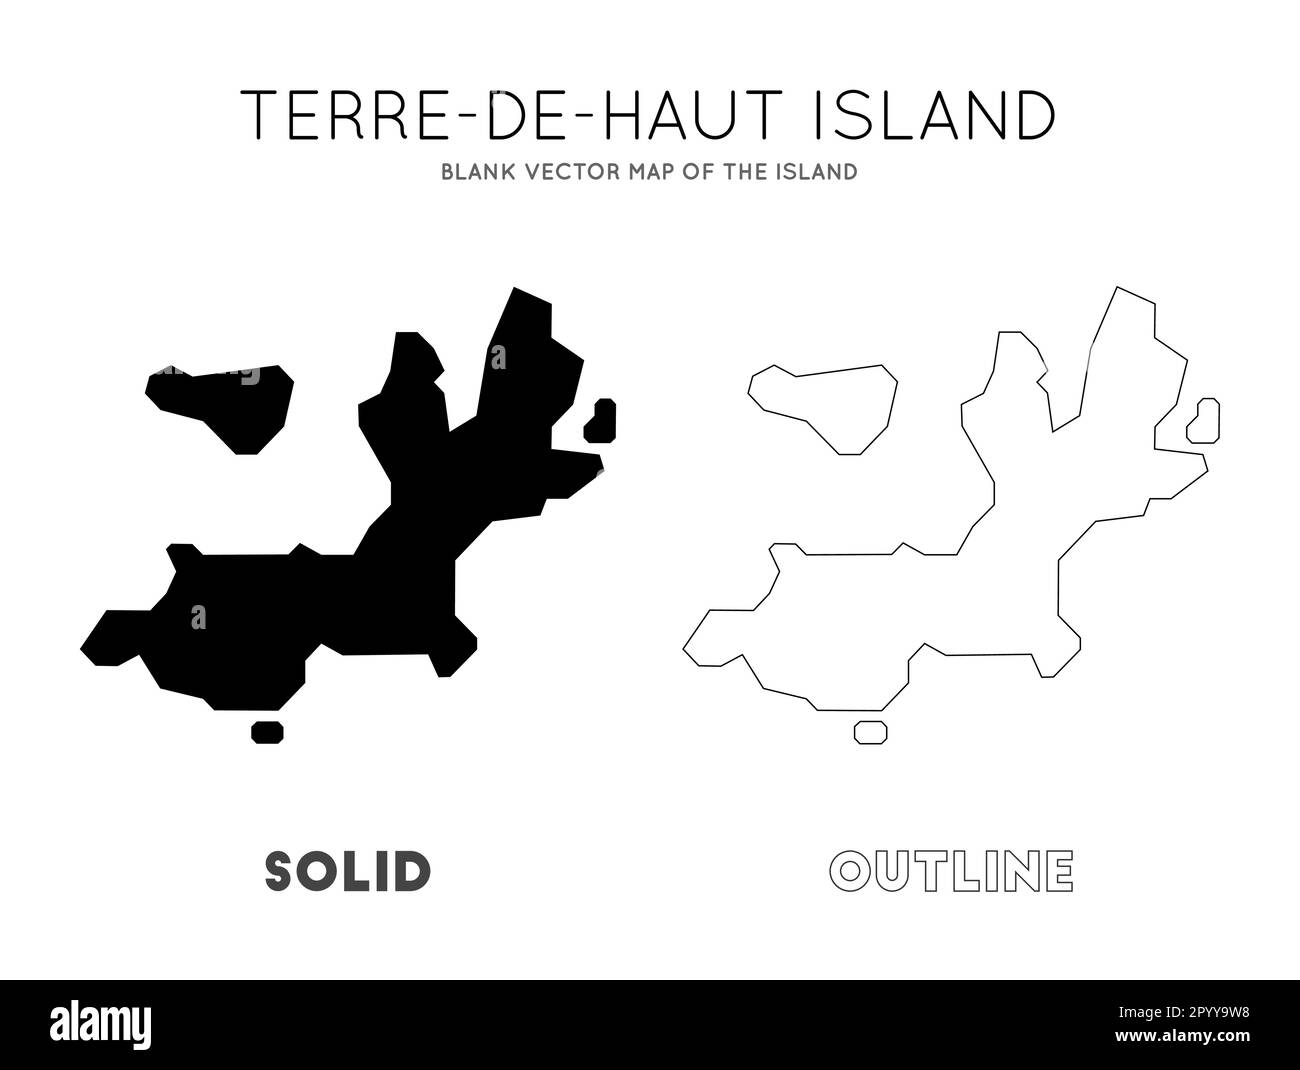 Carte de l'île de Terre-de-Haut. Frontières de l'île Terre-de-Haut pour votre infographie. Illustration vectorielle. Illustration de Vecteur